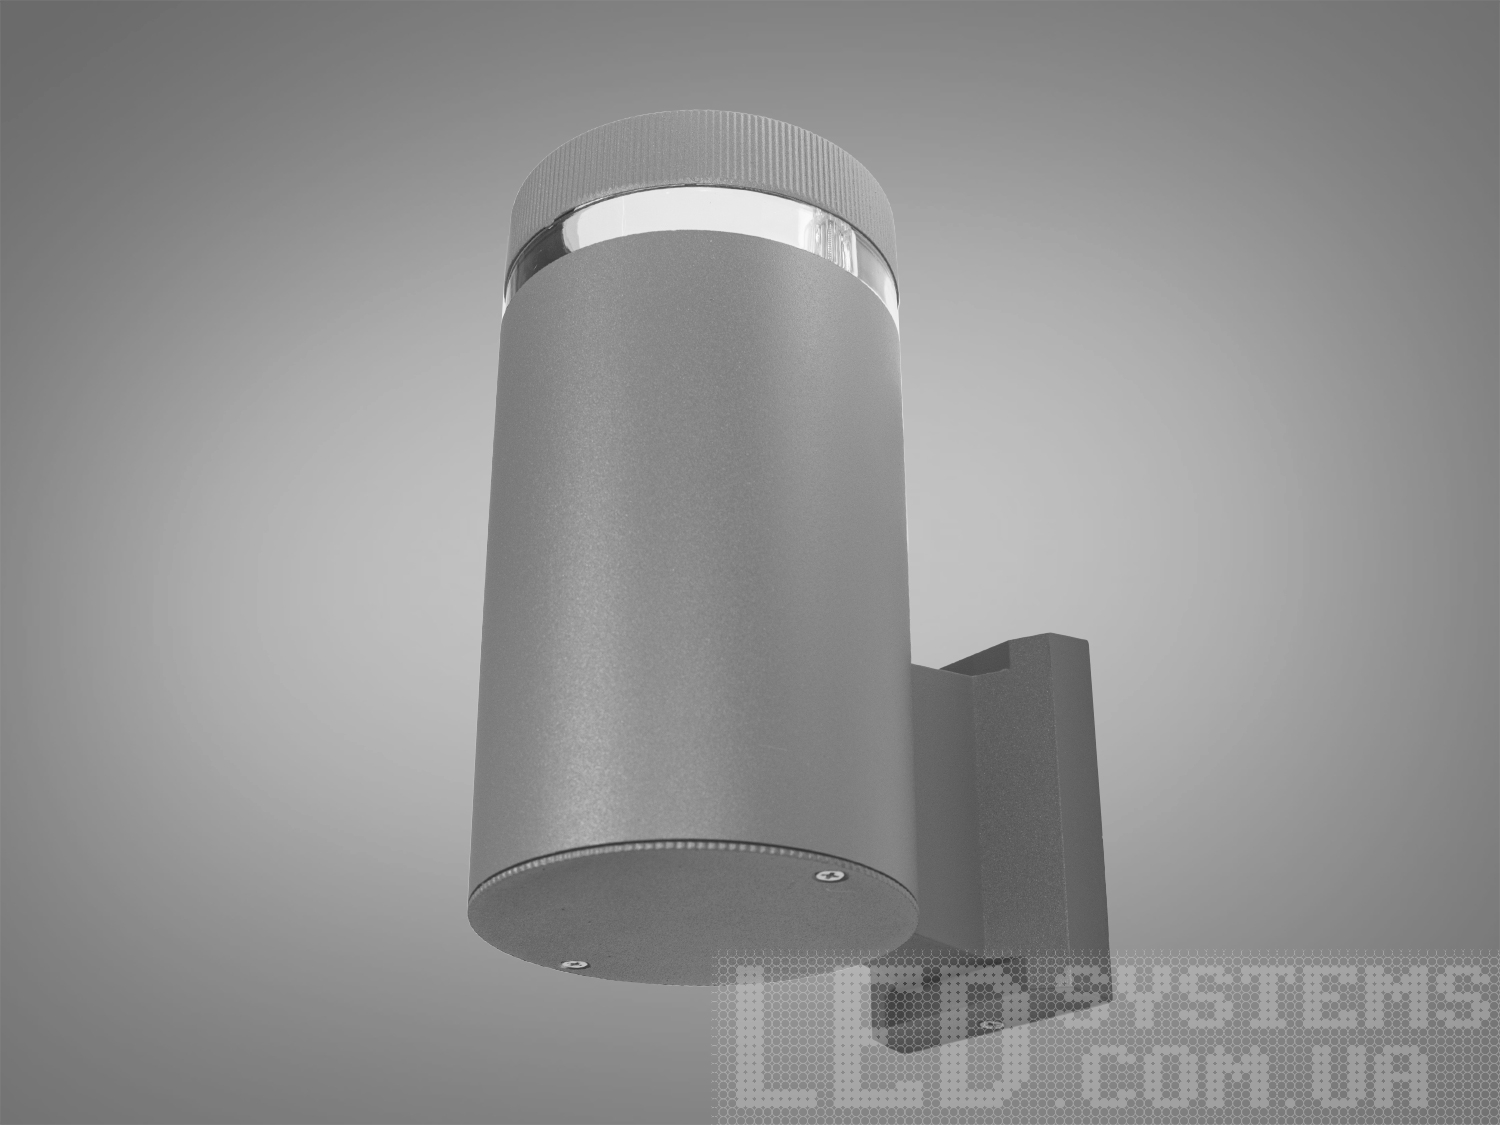 Настінний архітектурний світильник на 1 лампу, колір сірийФасадные светильники, LED светильники, уличные светильники, Архитектурная подсветка